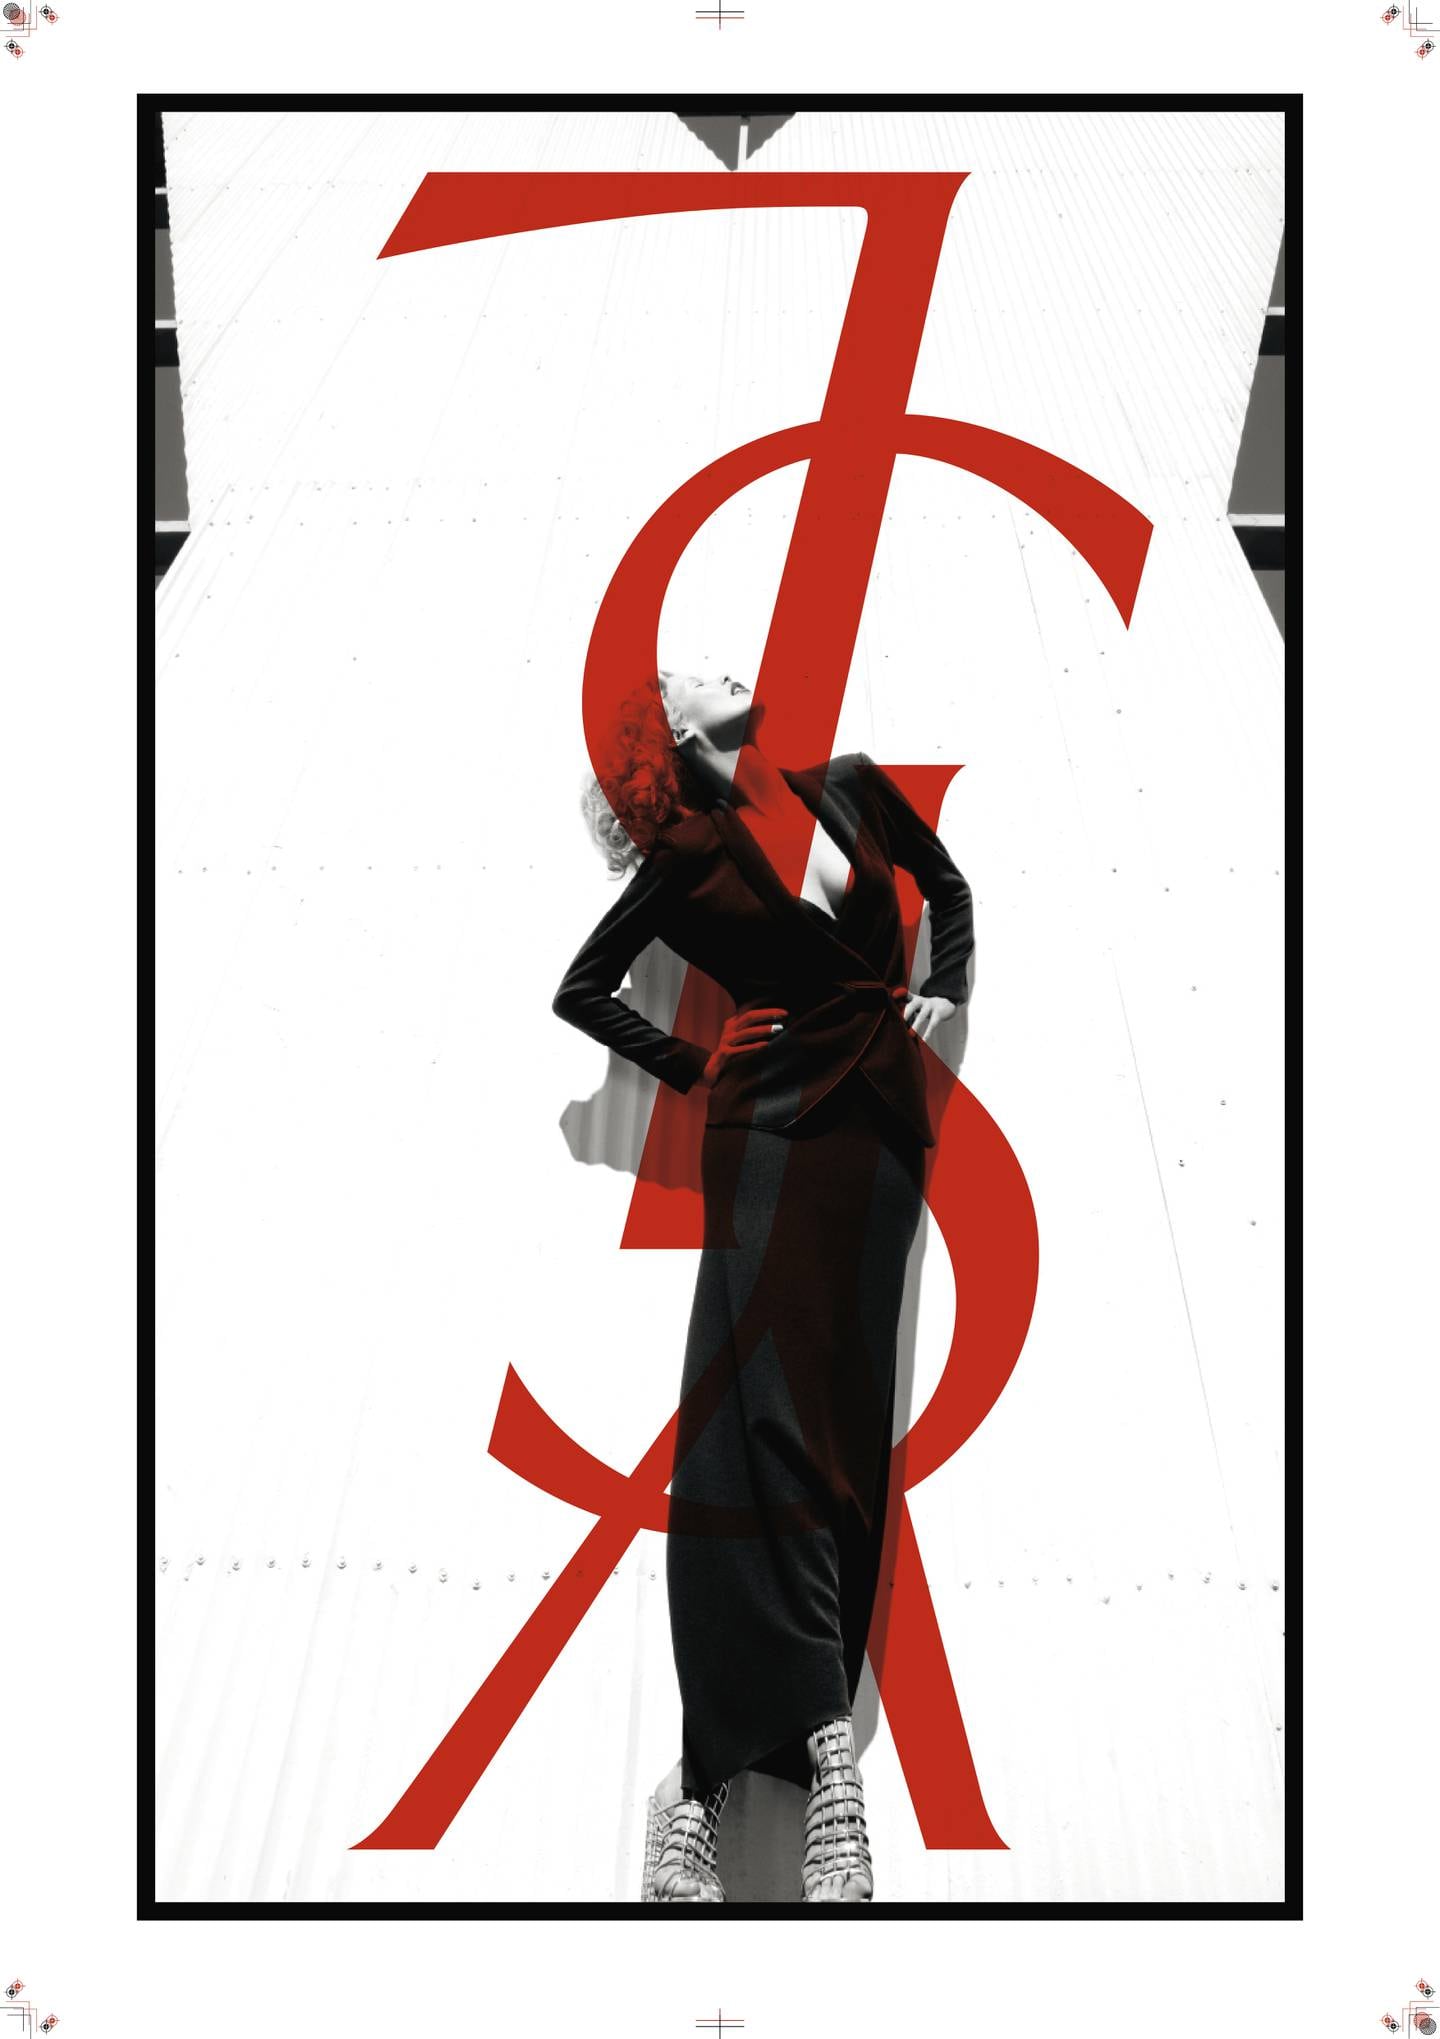 Yves Saint Laurent Spring-Summer 2009 Poster.